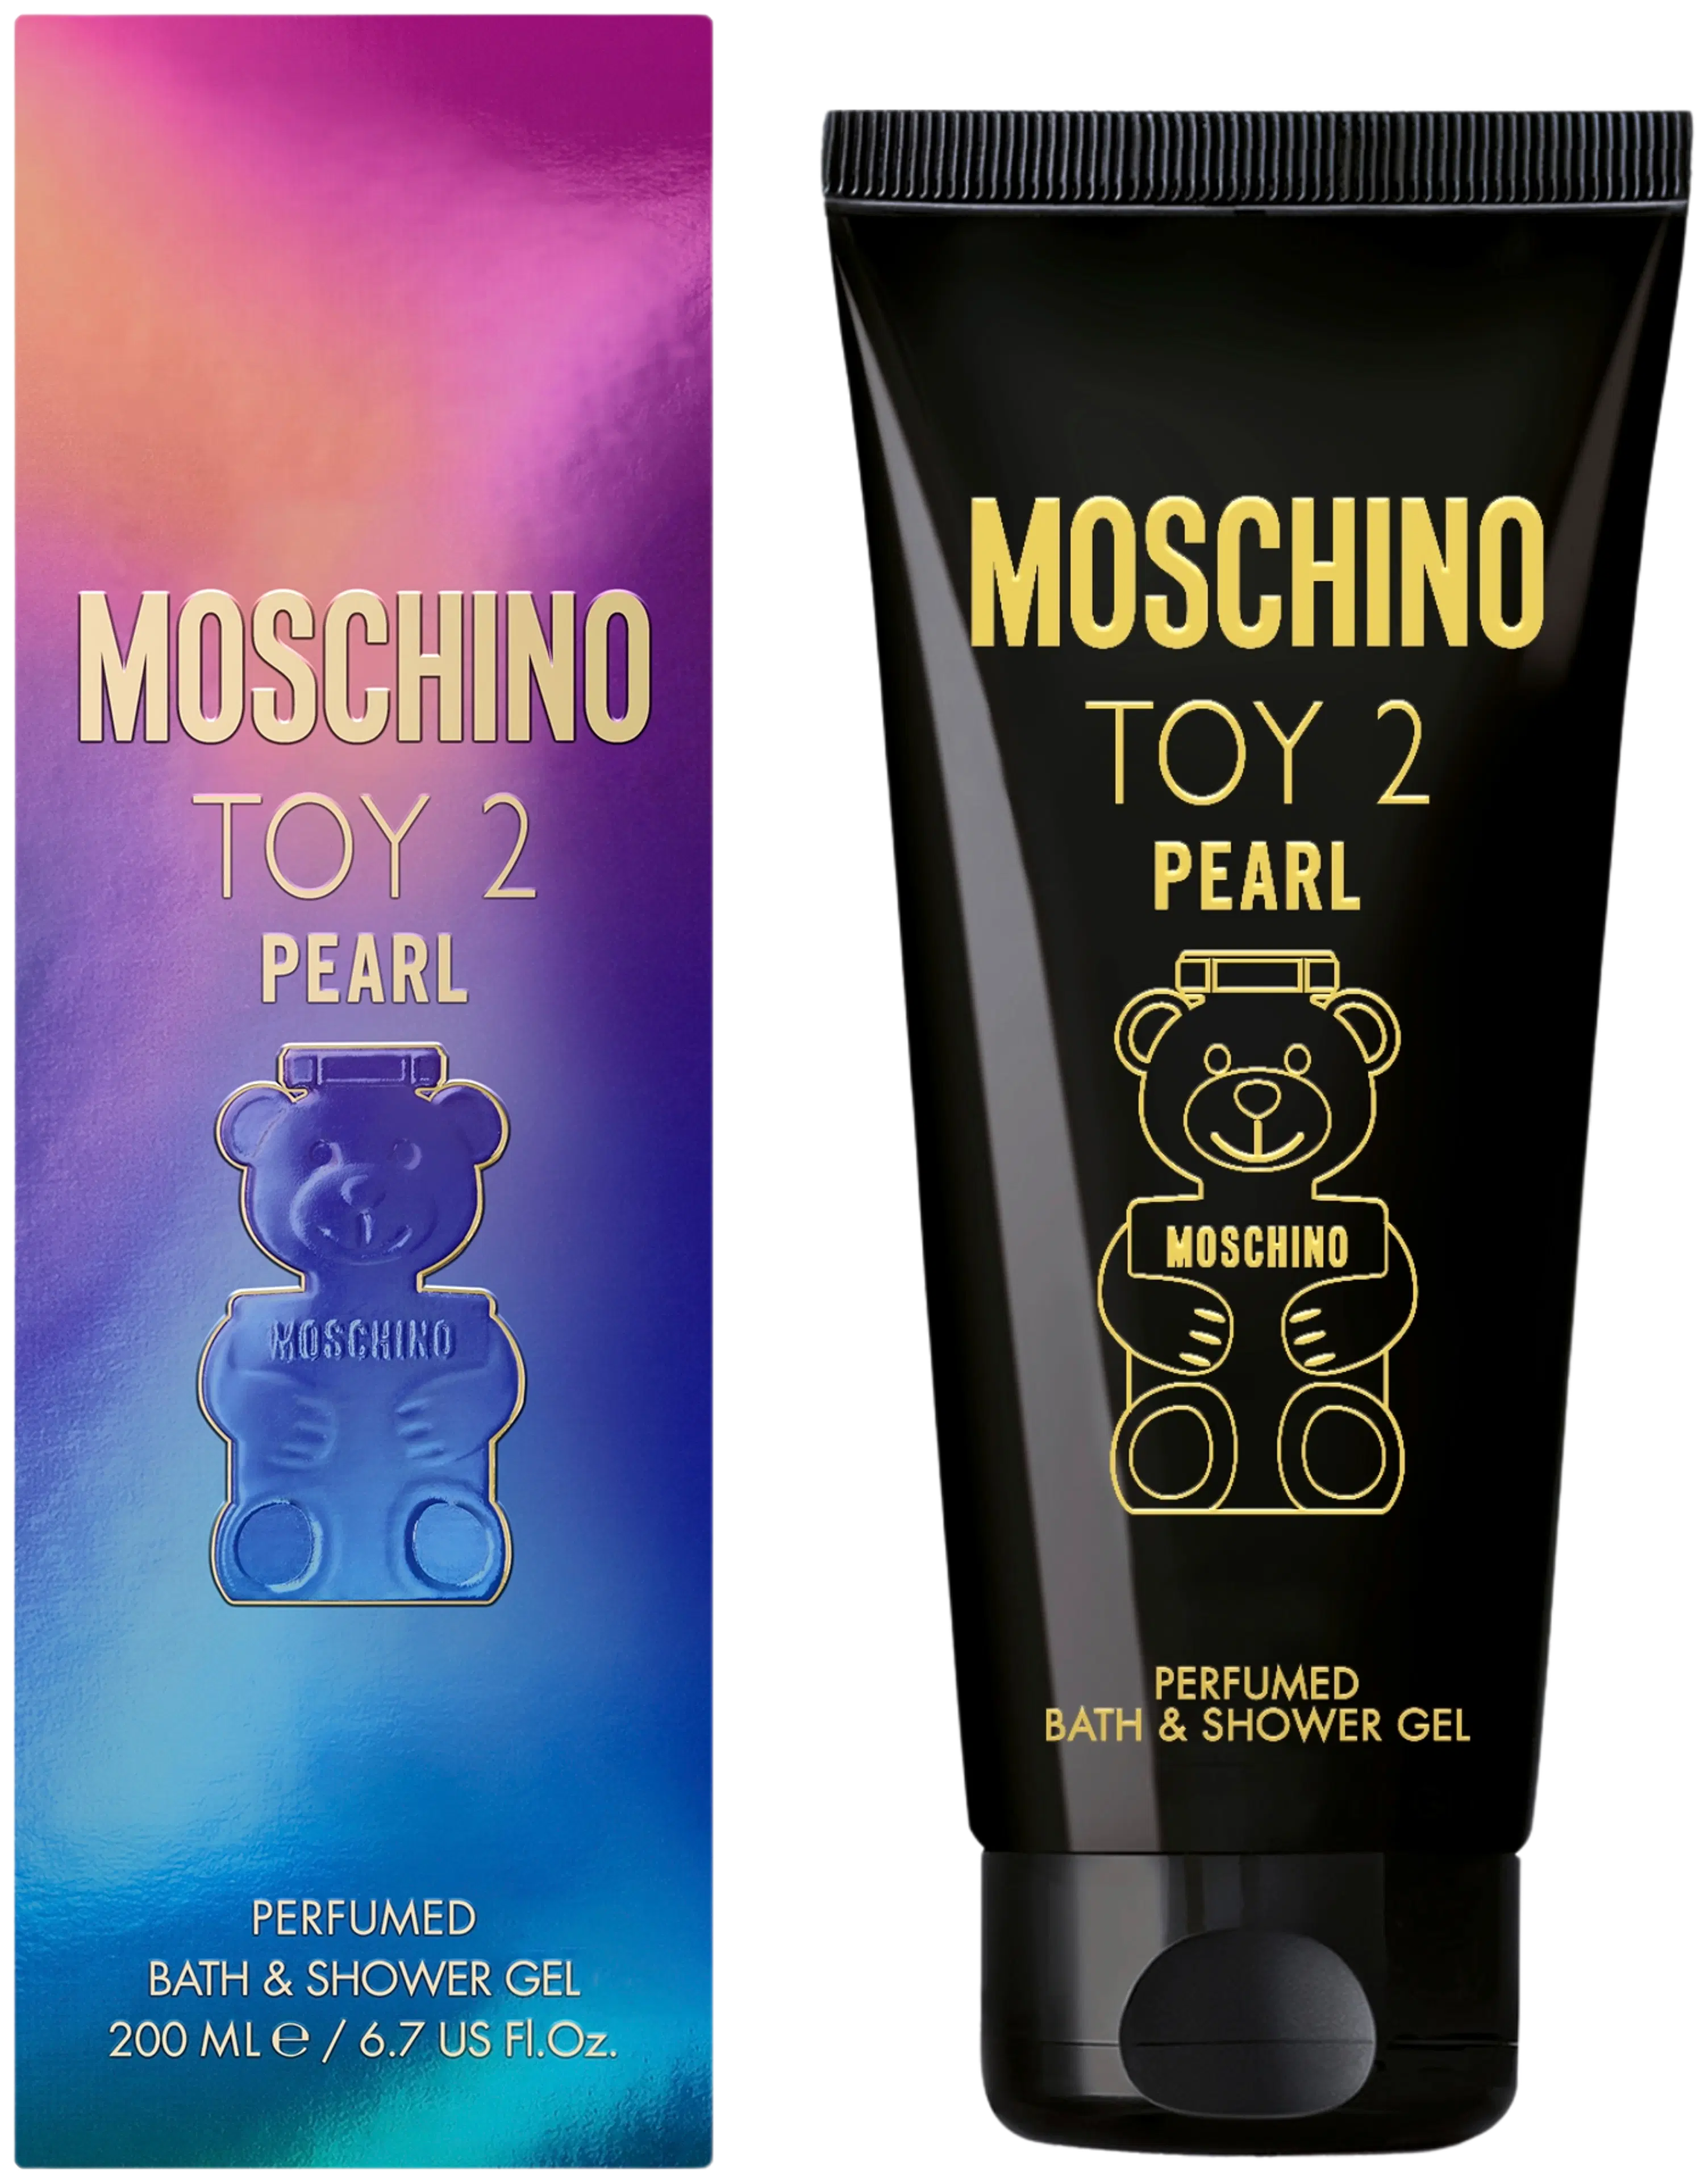 Moschino Toy 2 Pearl Bath & Shower Gel 200 ml